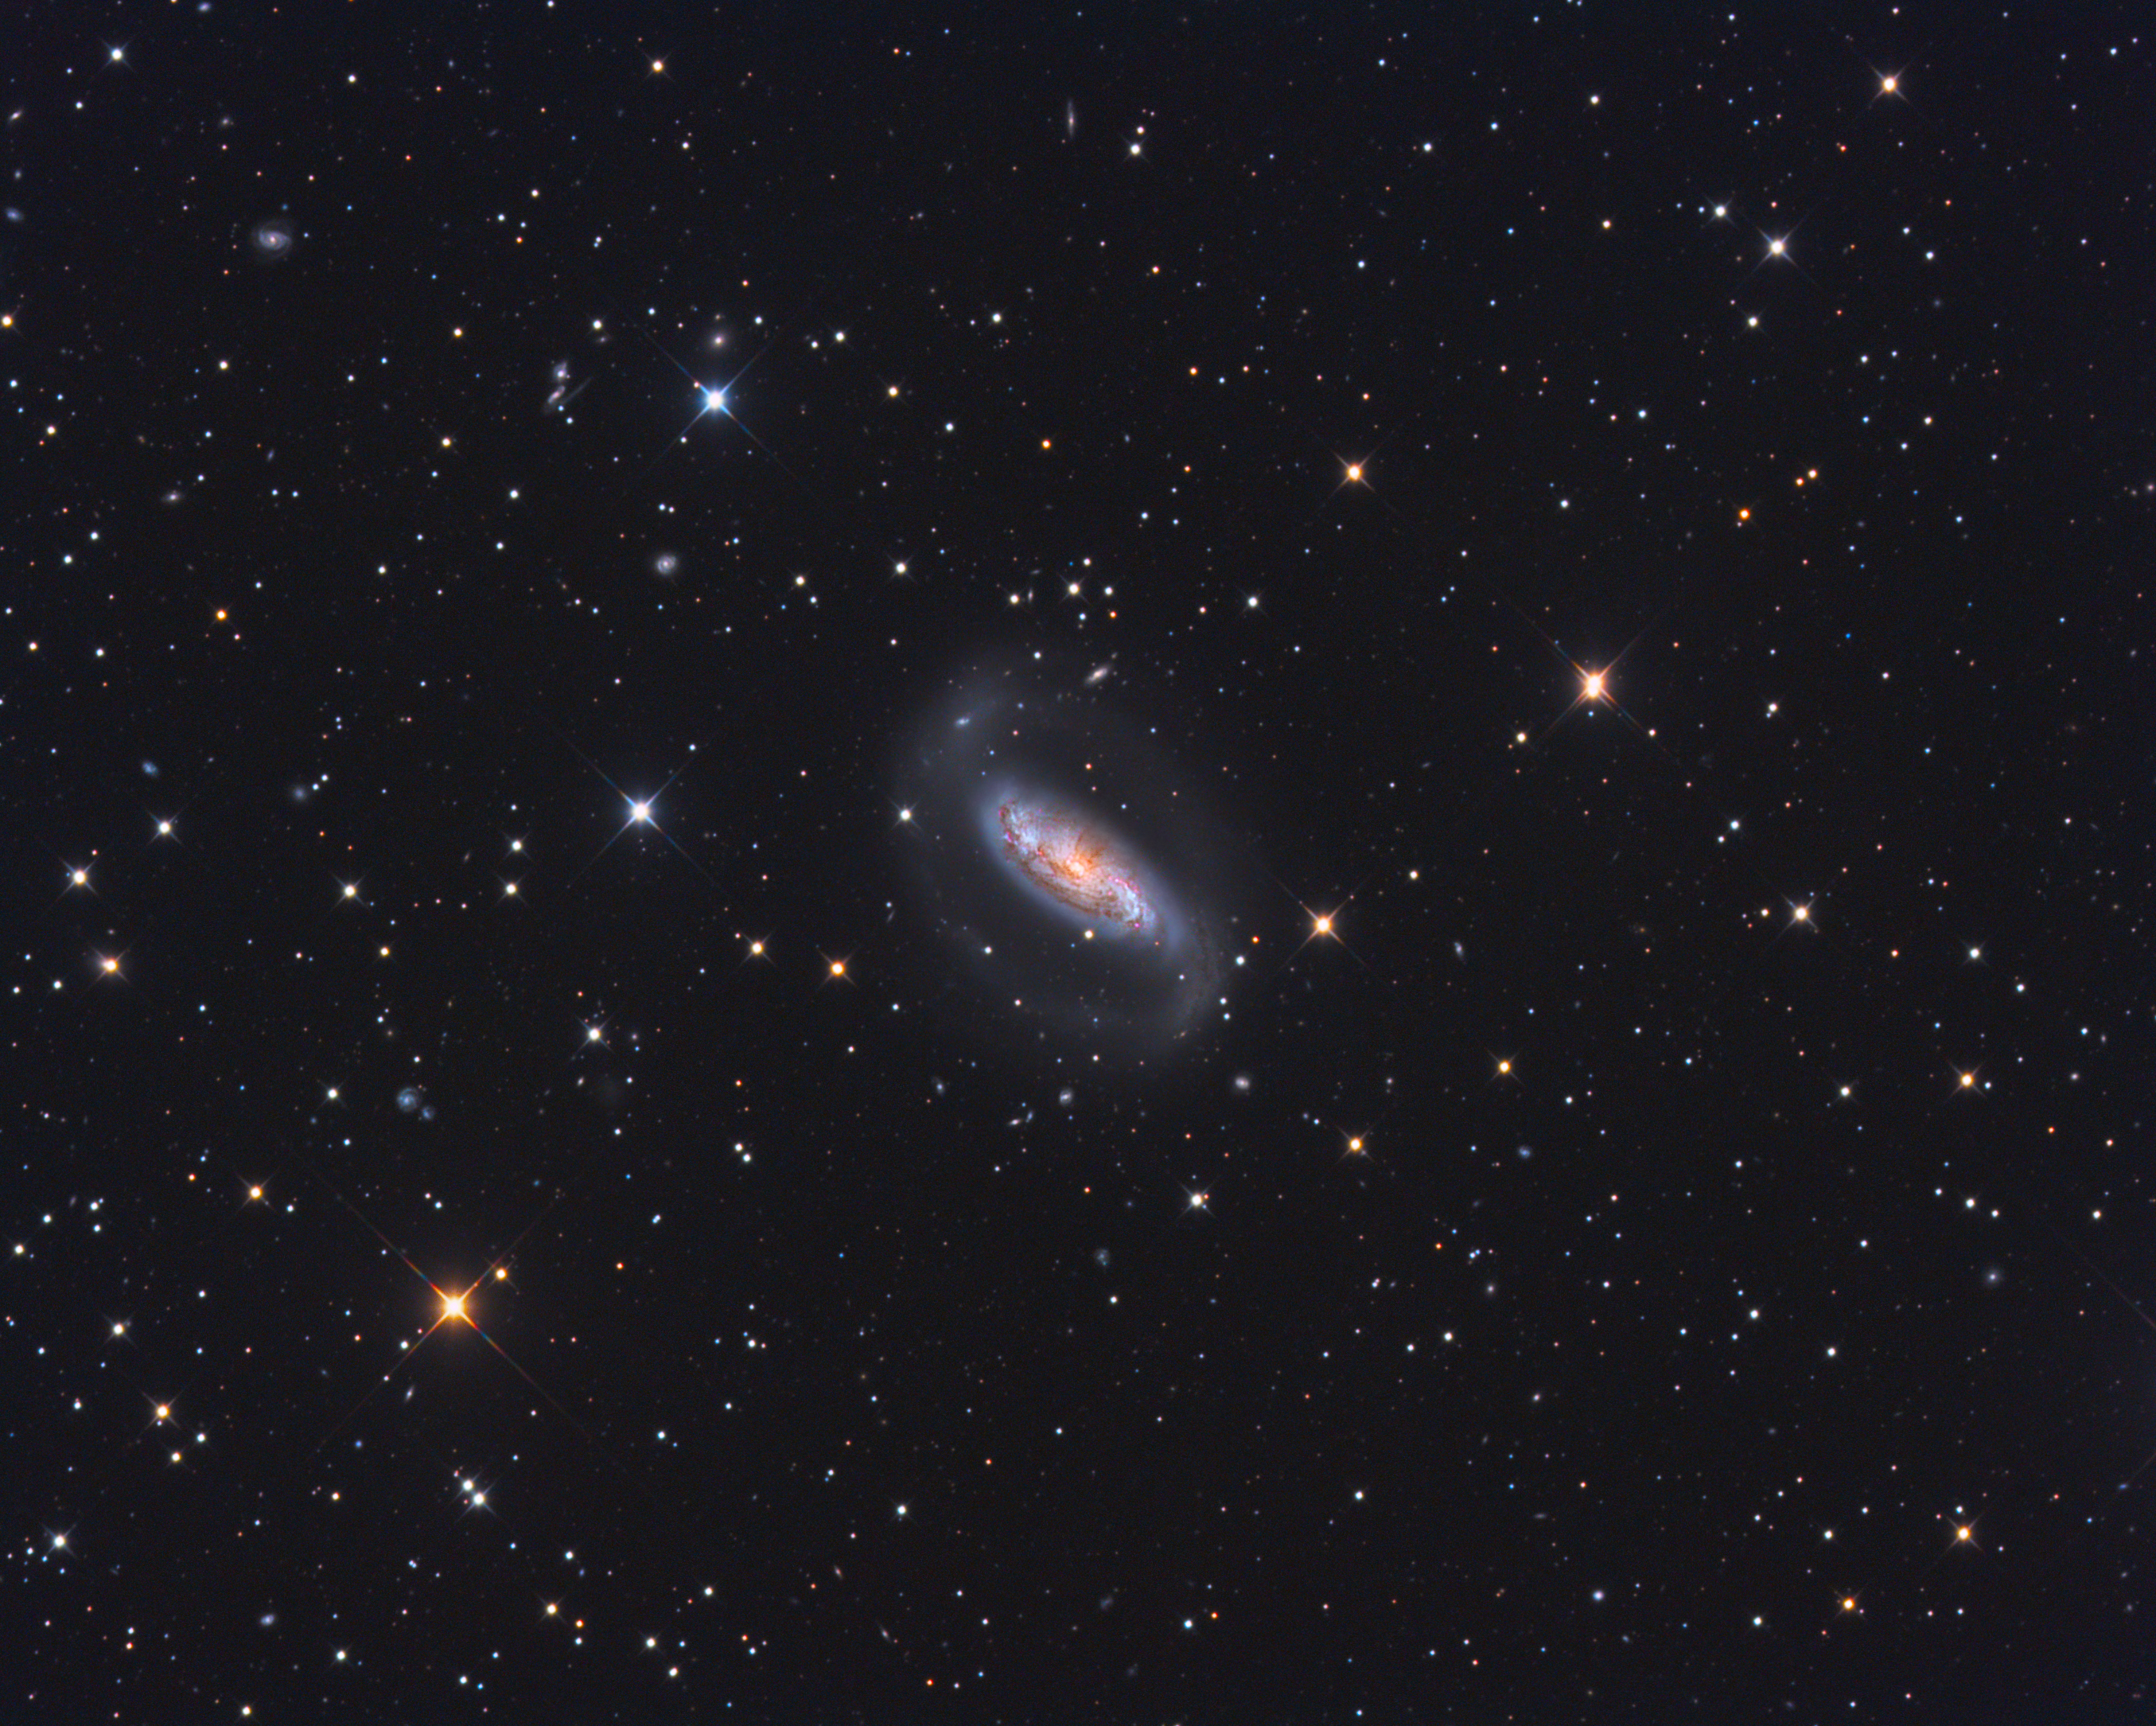 NGC 1808 - a Seyfert galaxy in Columba